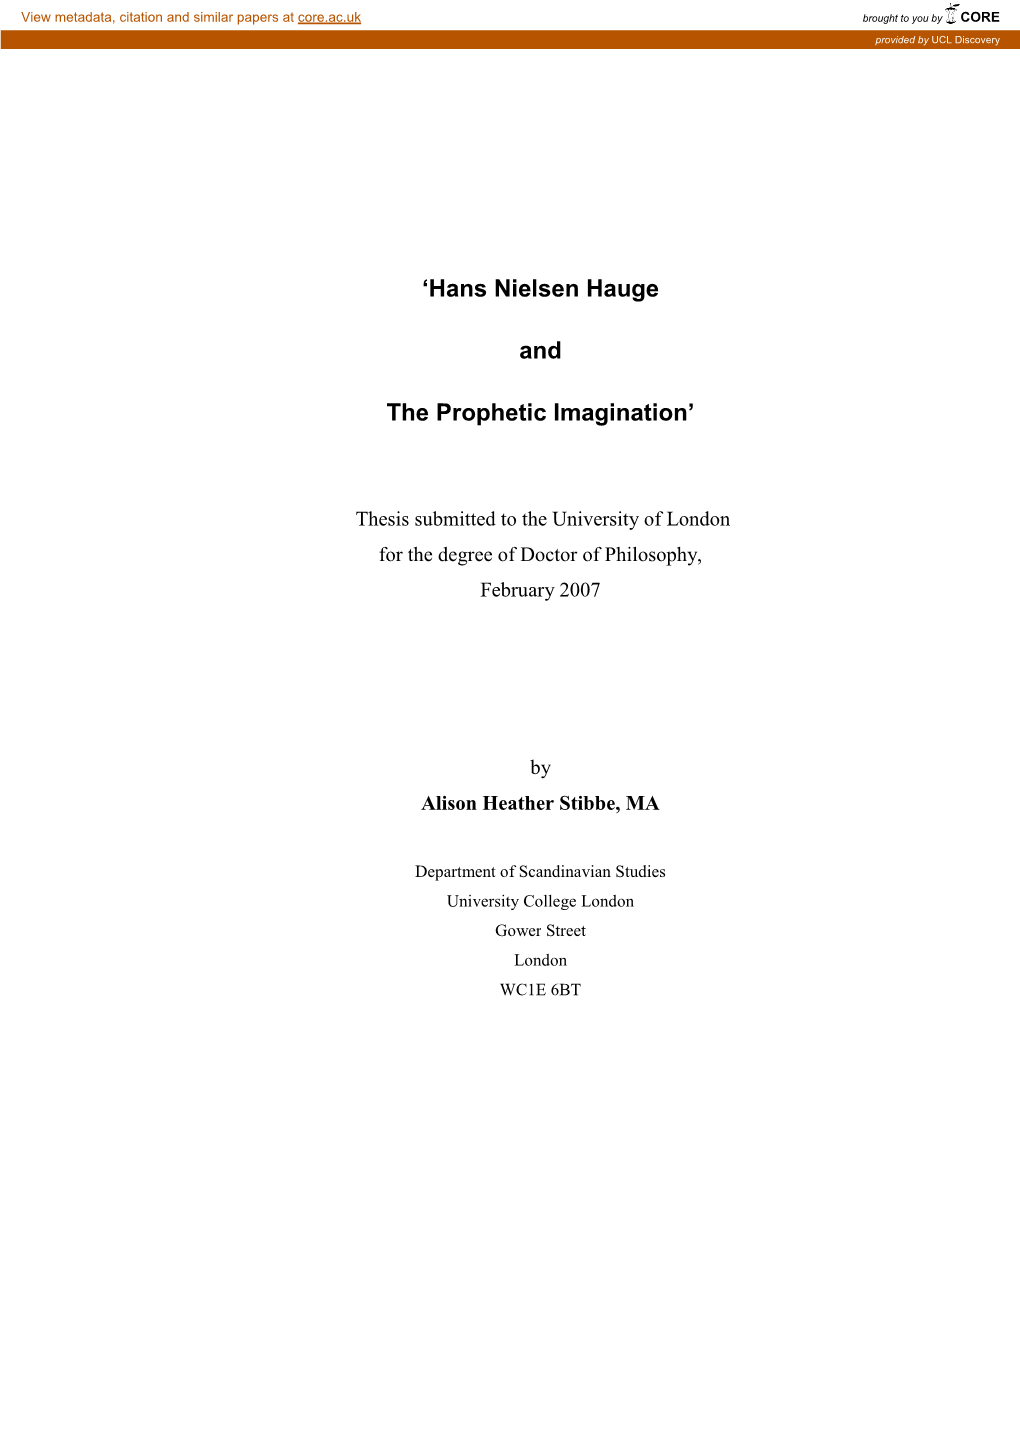 Hans Nielsen Hauge and the Prophetic Imagination